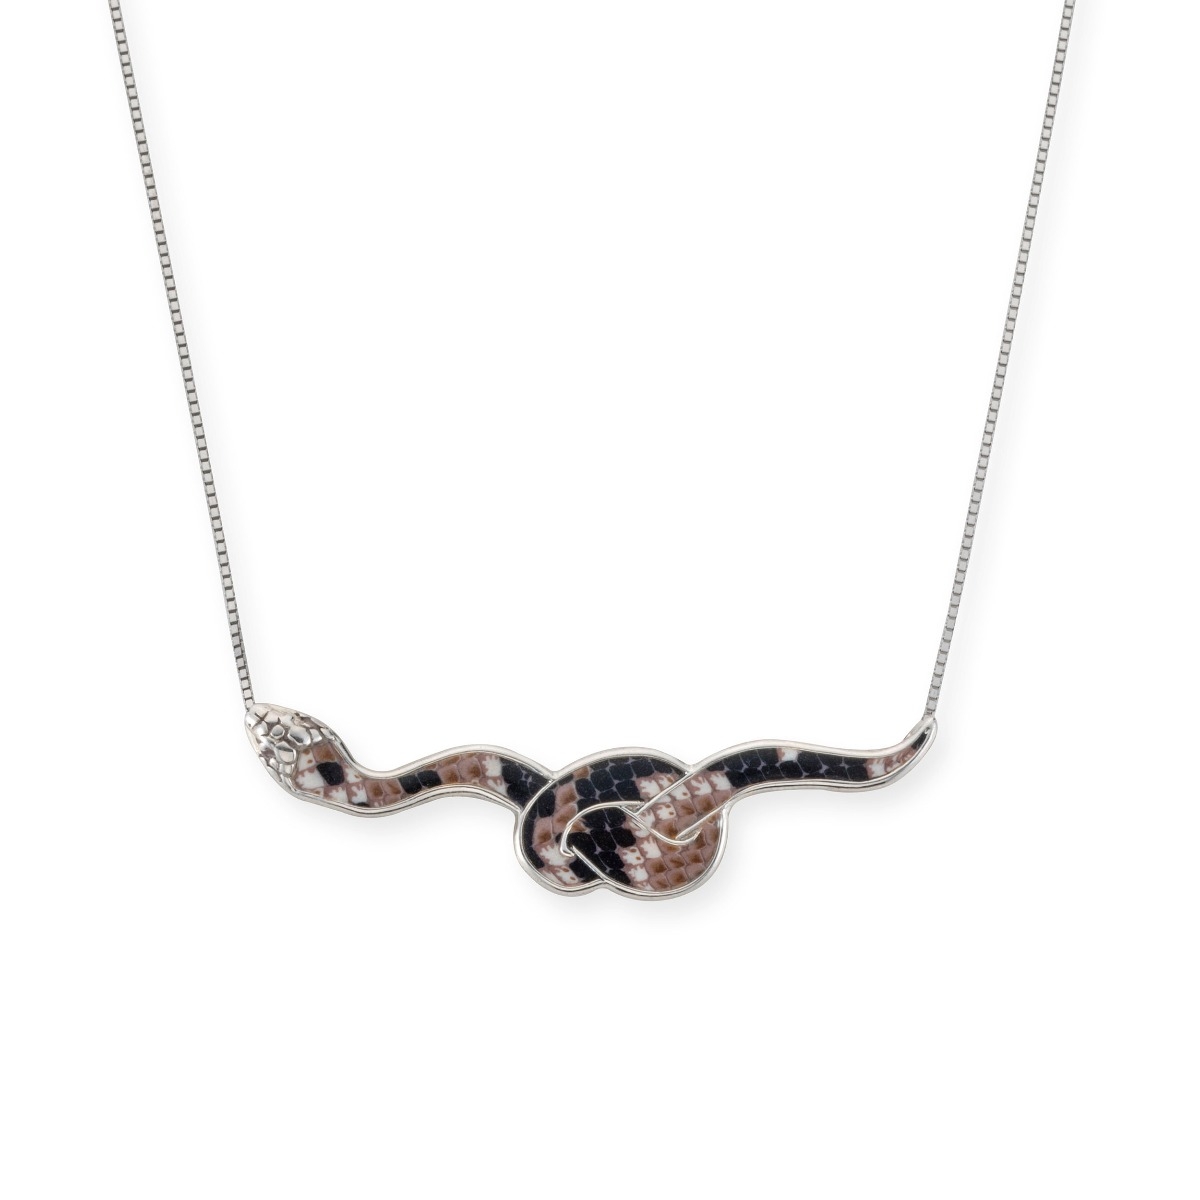 Adina Plastelina Silver Snake Necklace – Snakeskin - 1